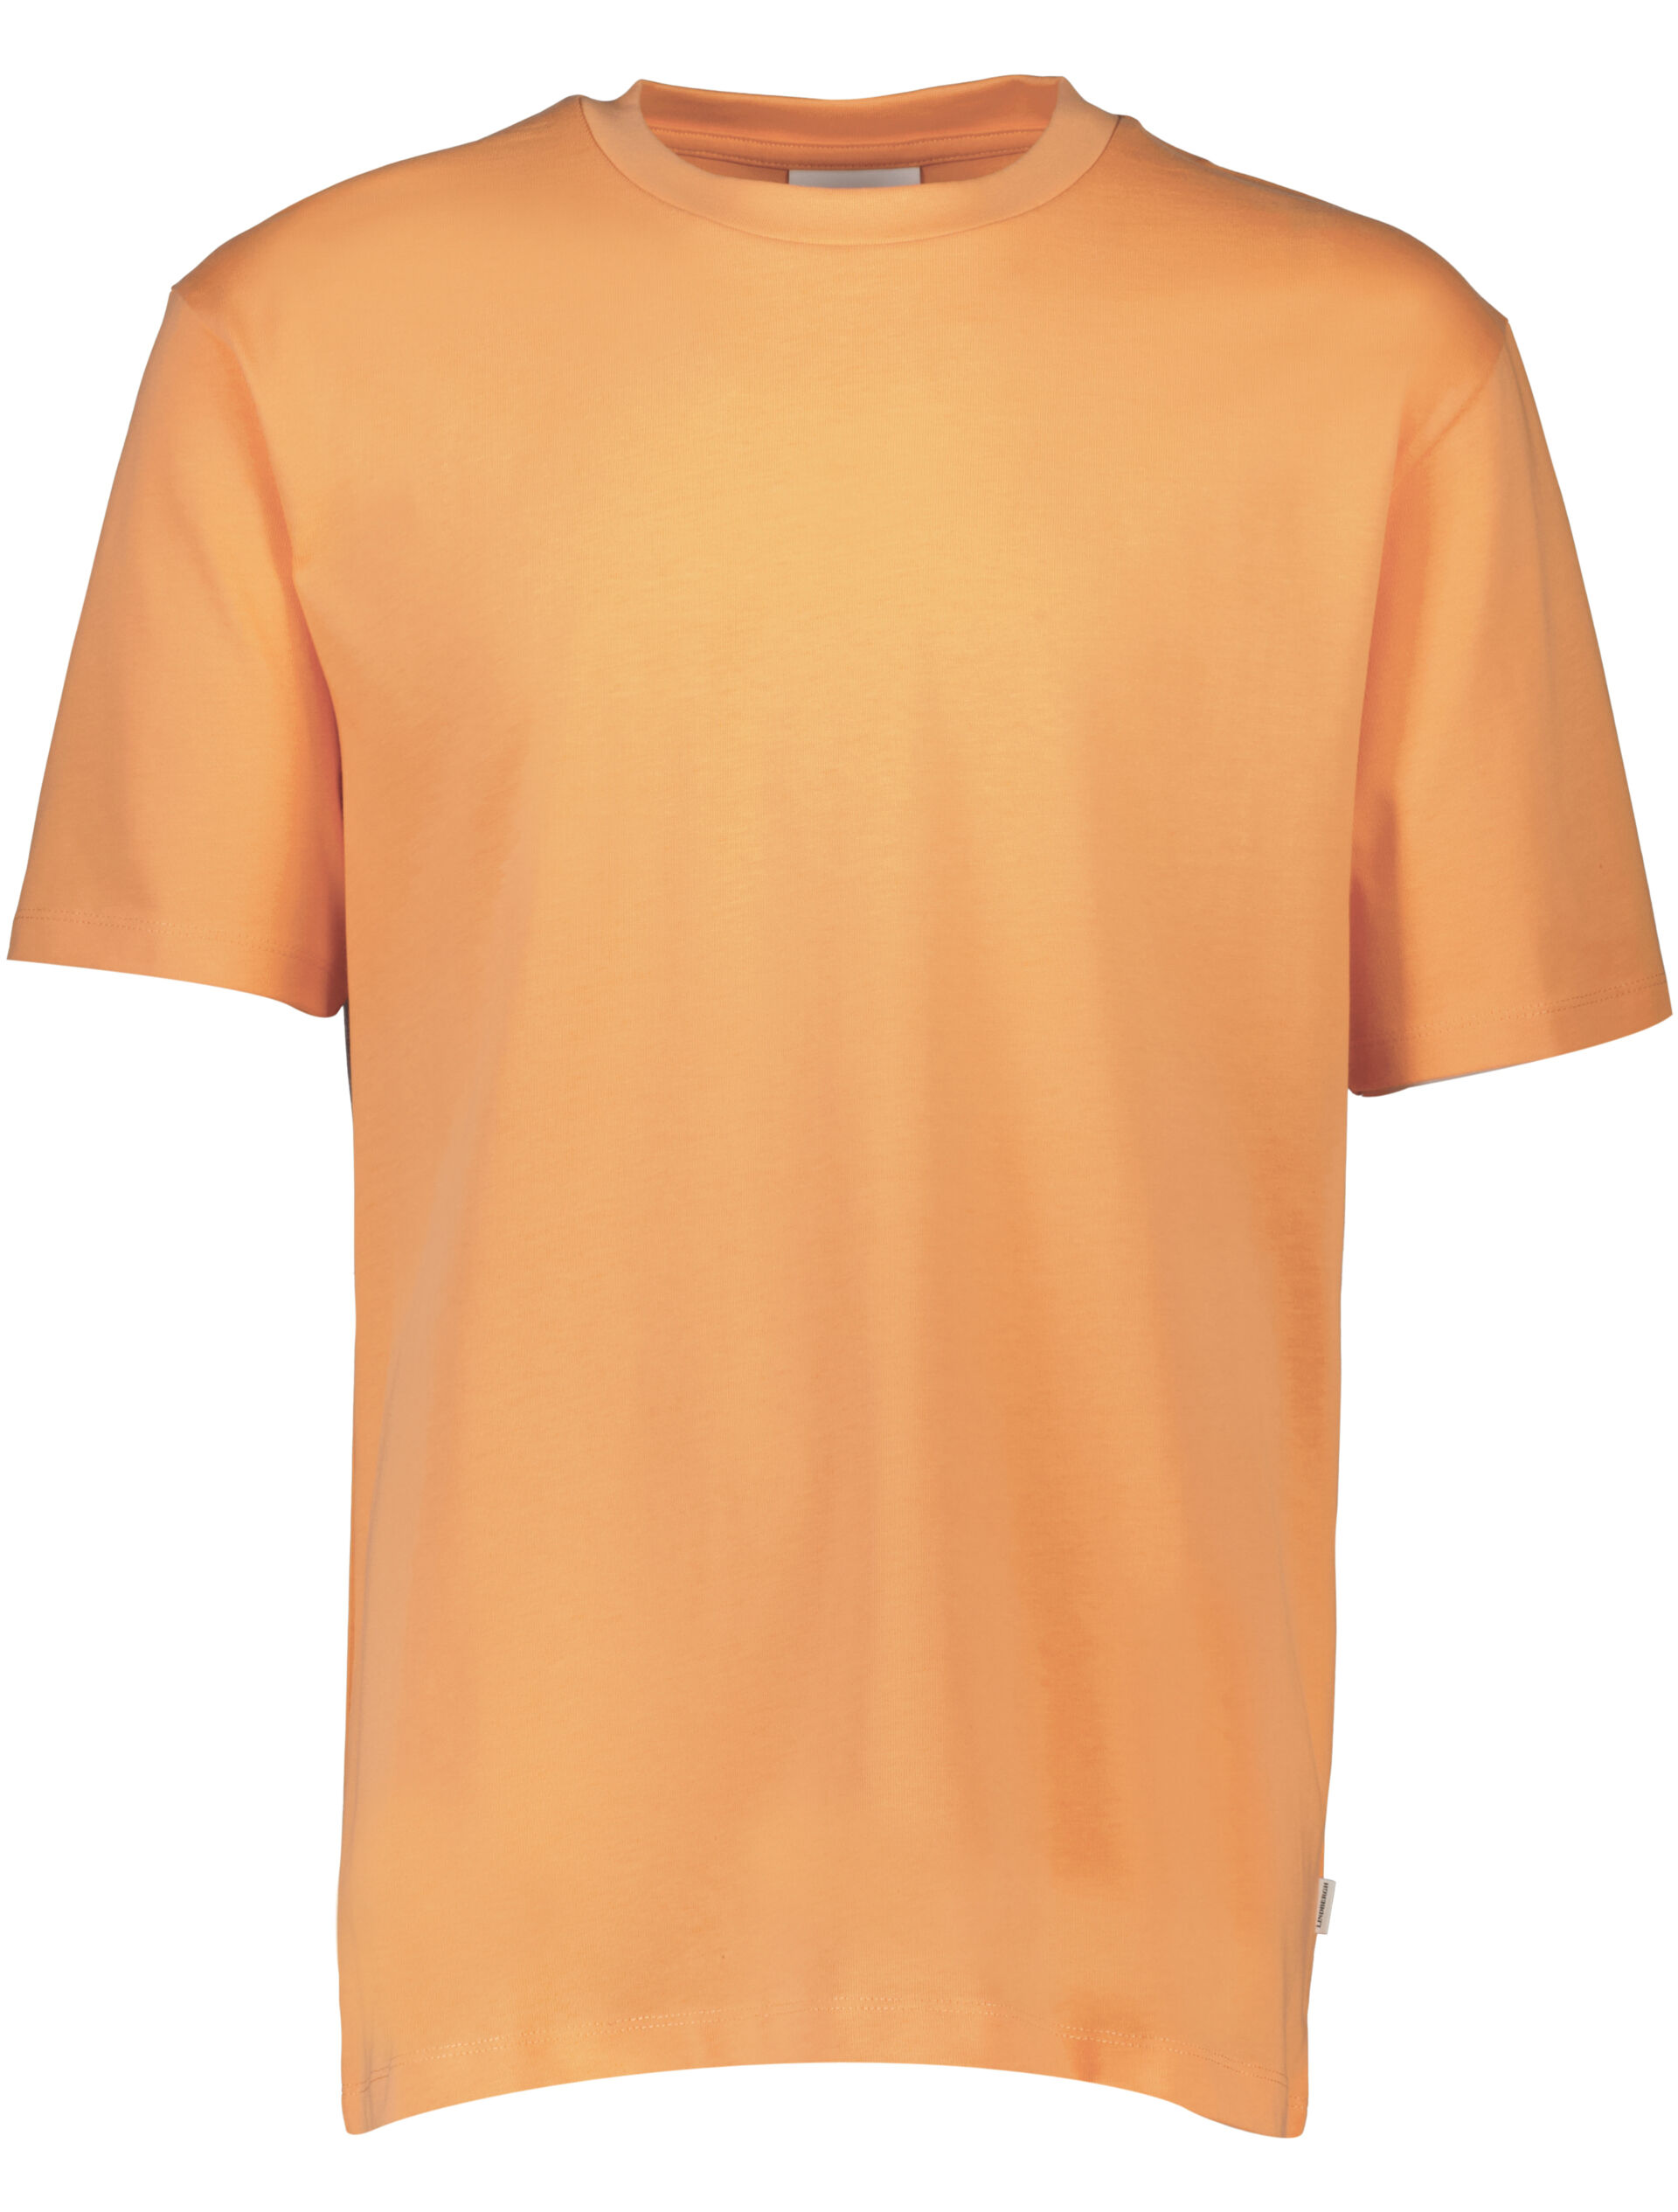 T-shirt T-shirt Orange 30-400120